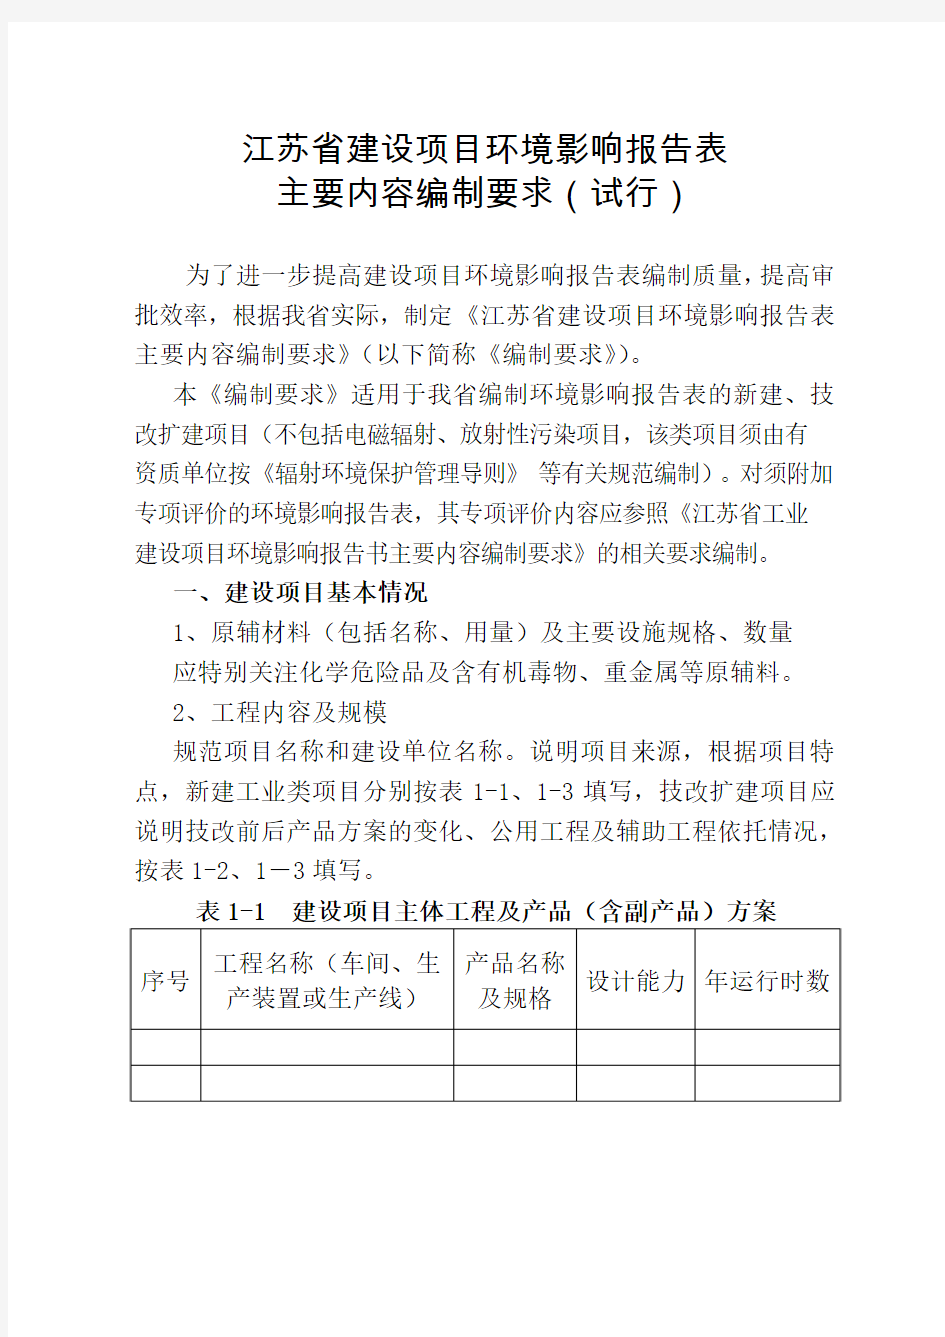 《江苏省建设项目环境影响报告表主要内容编制要求(试行)》